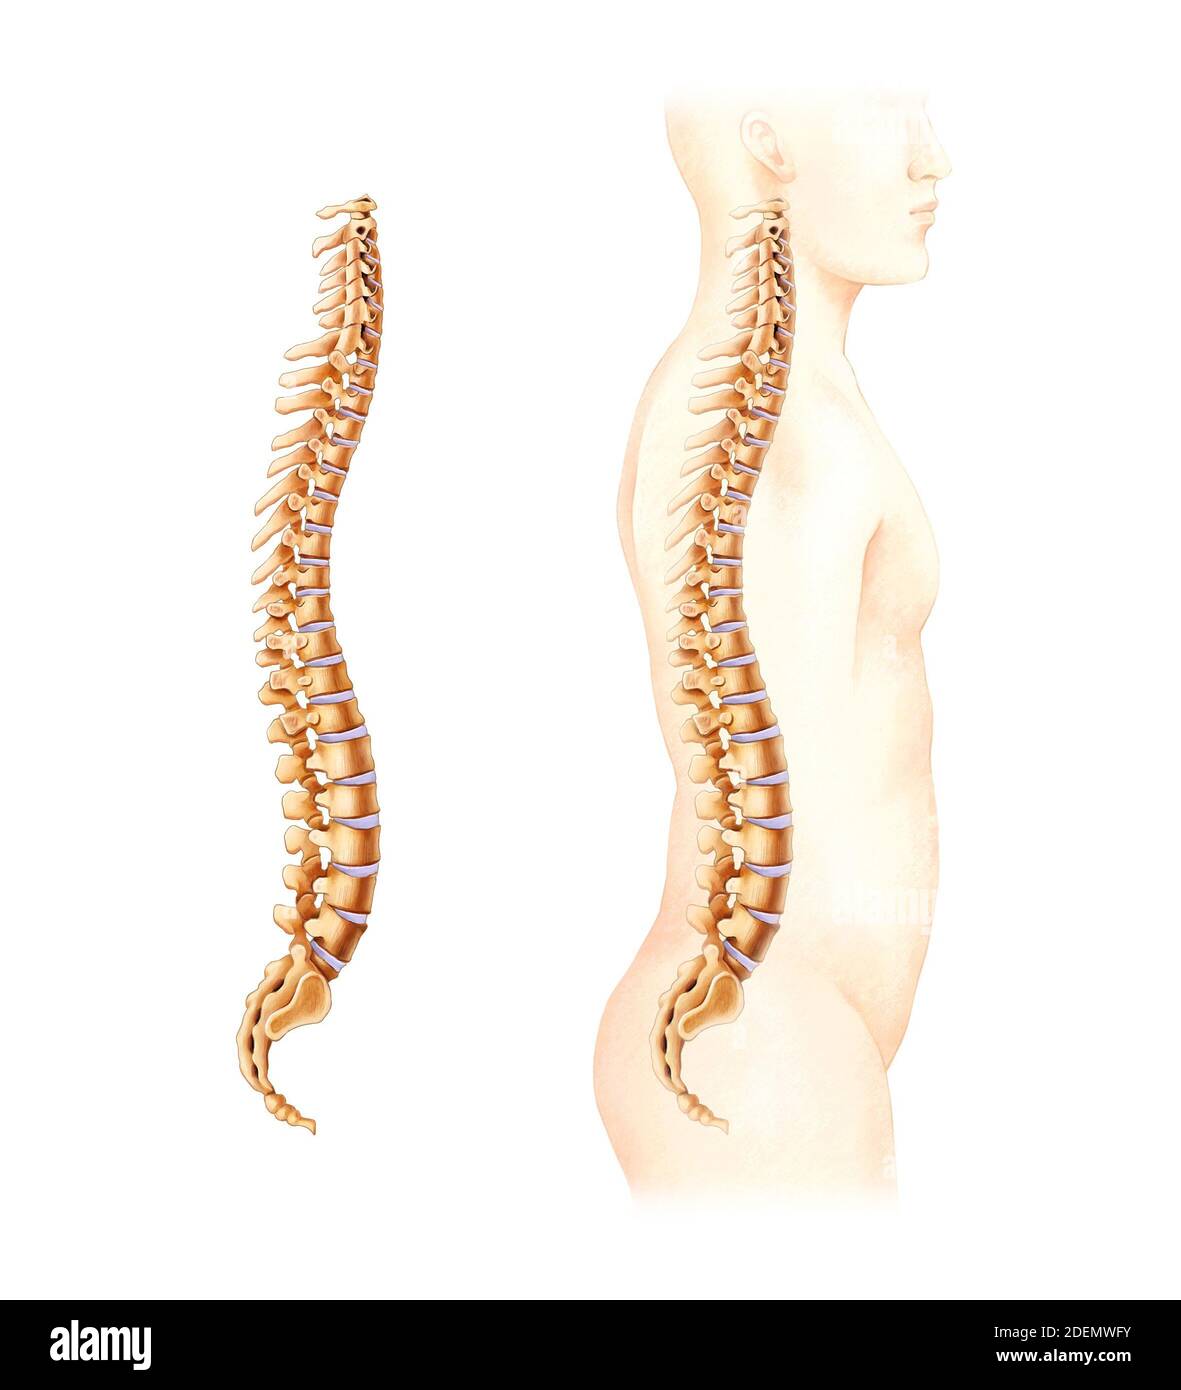 spinal and lumbar disc anatomy Stock Photo